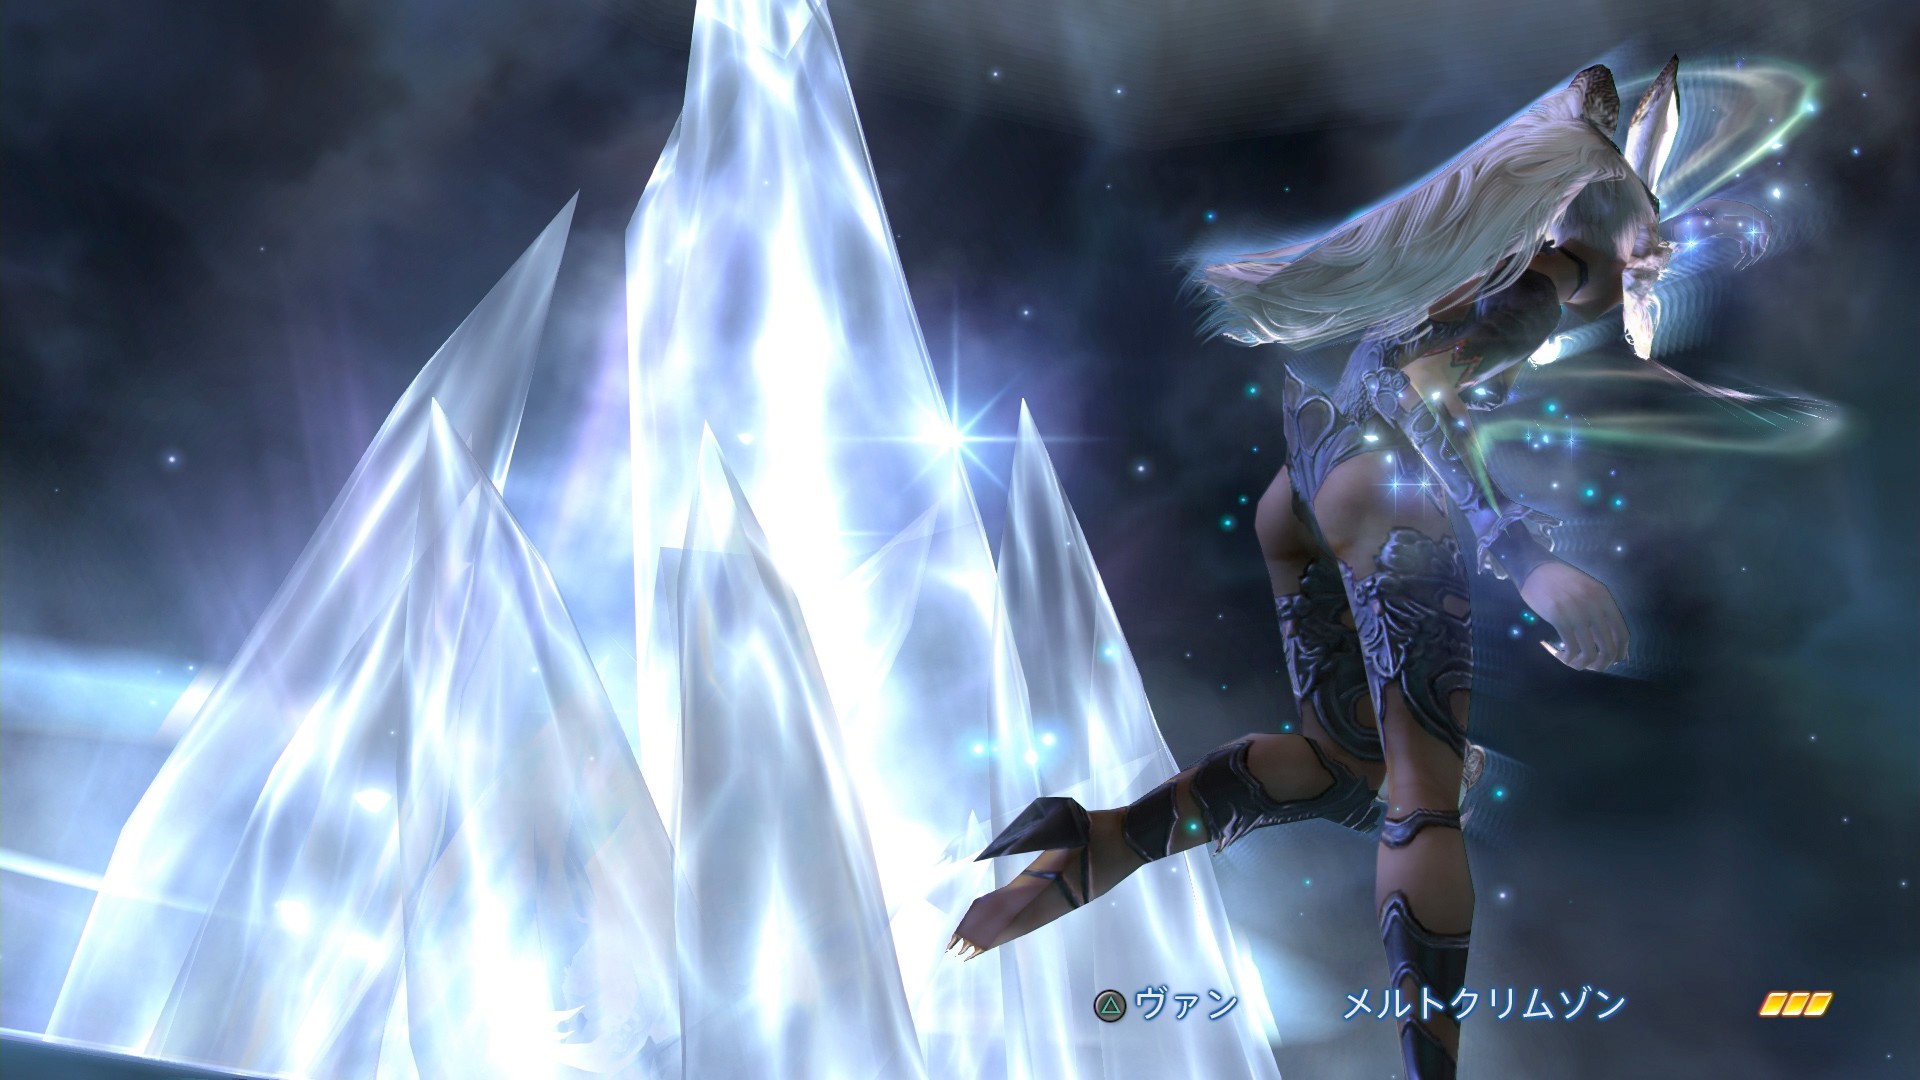 画像集no 001 Final Fantasy Xii The Zodiac Age のやり込み要素モブハントや バトルで活躍するミストナック 召喚獣 を紹介